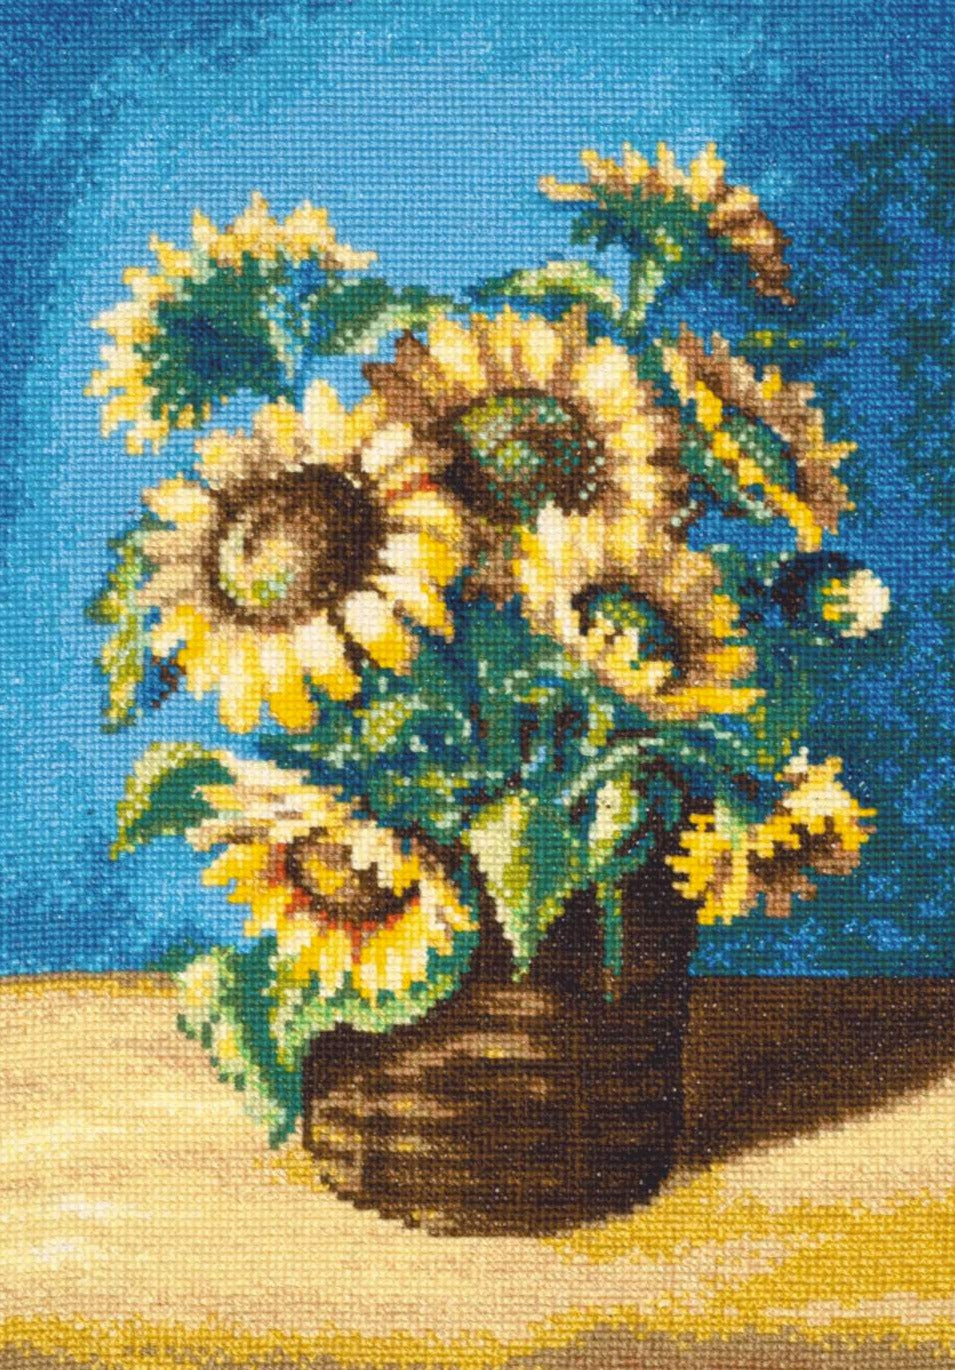 רקמה על בד גבינה - Sunflowers in a Basket after N. Antonova's Painting